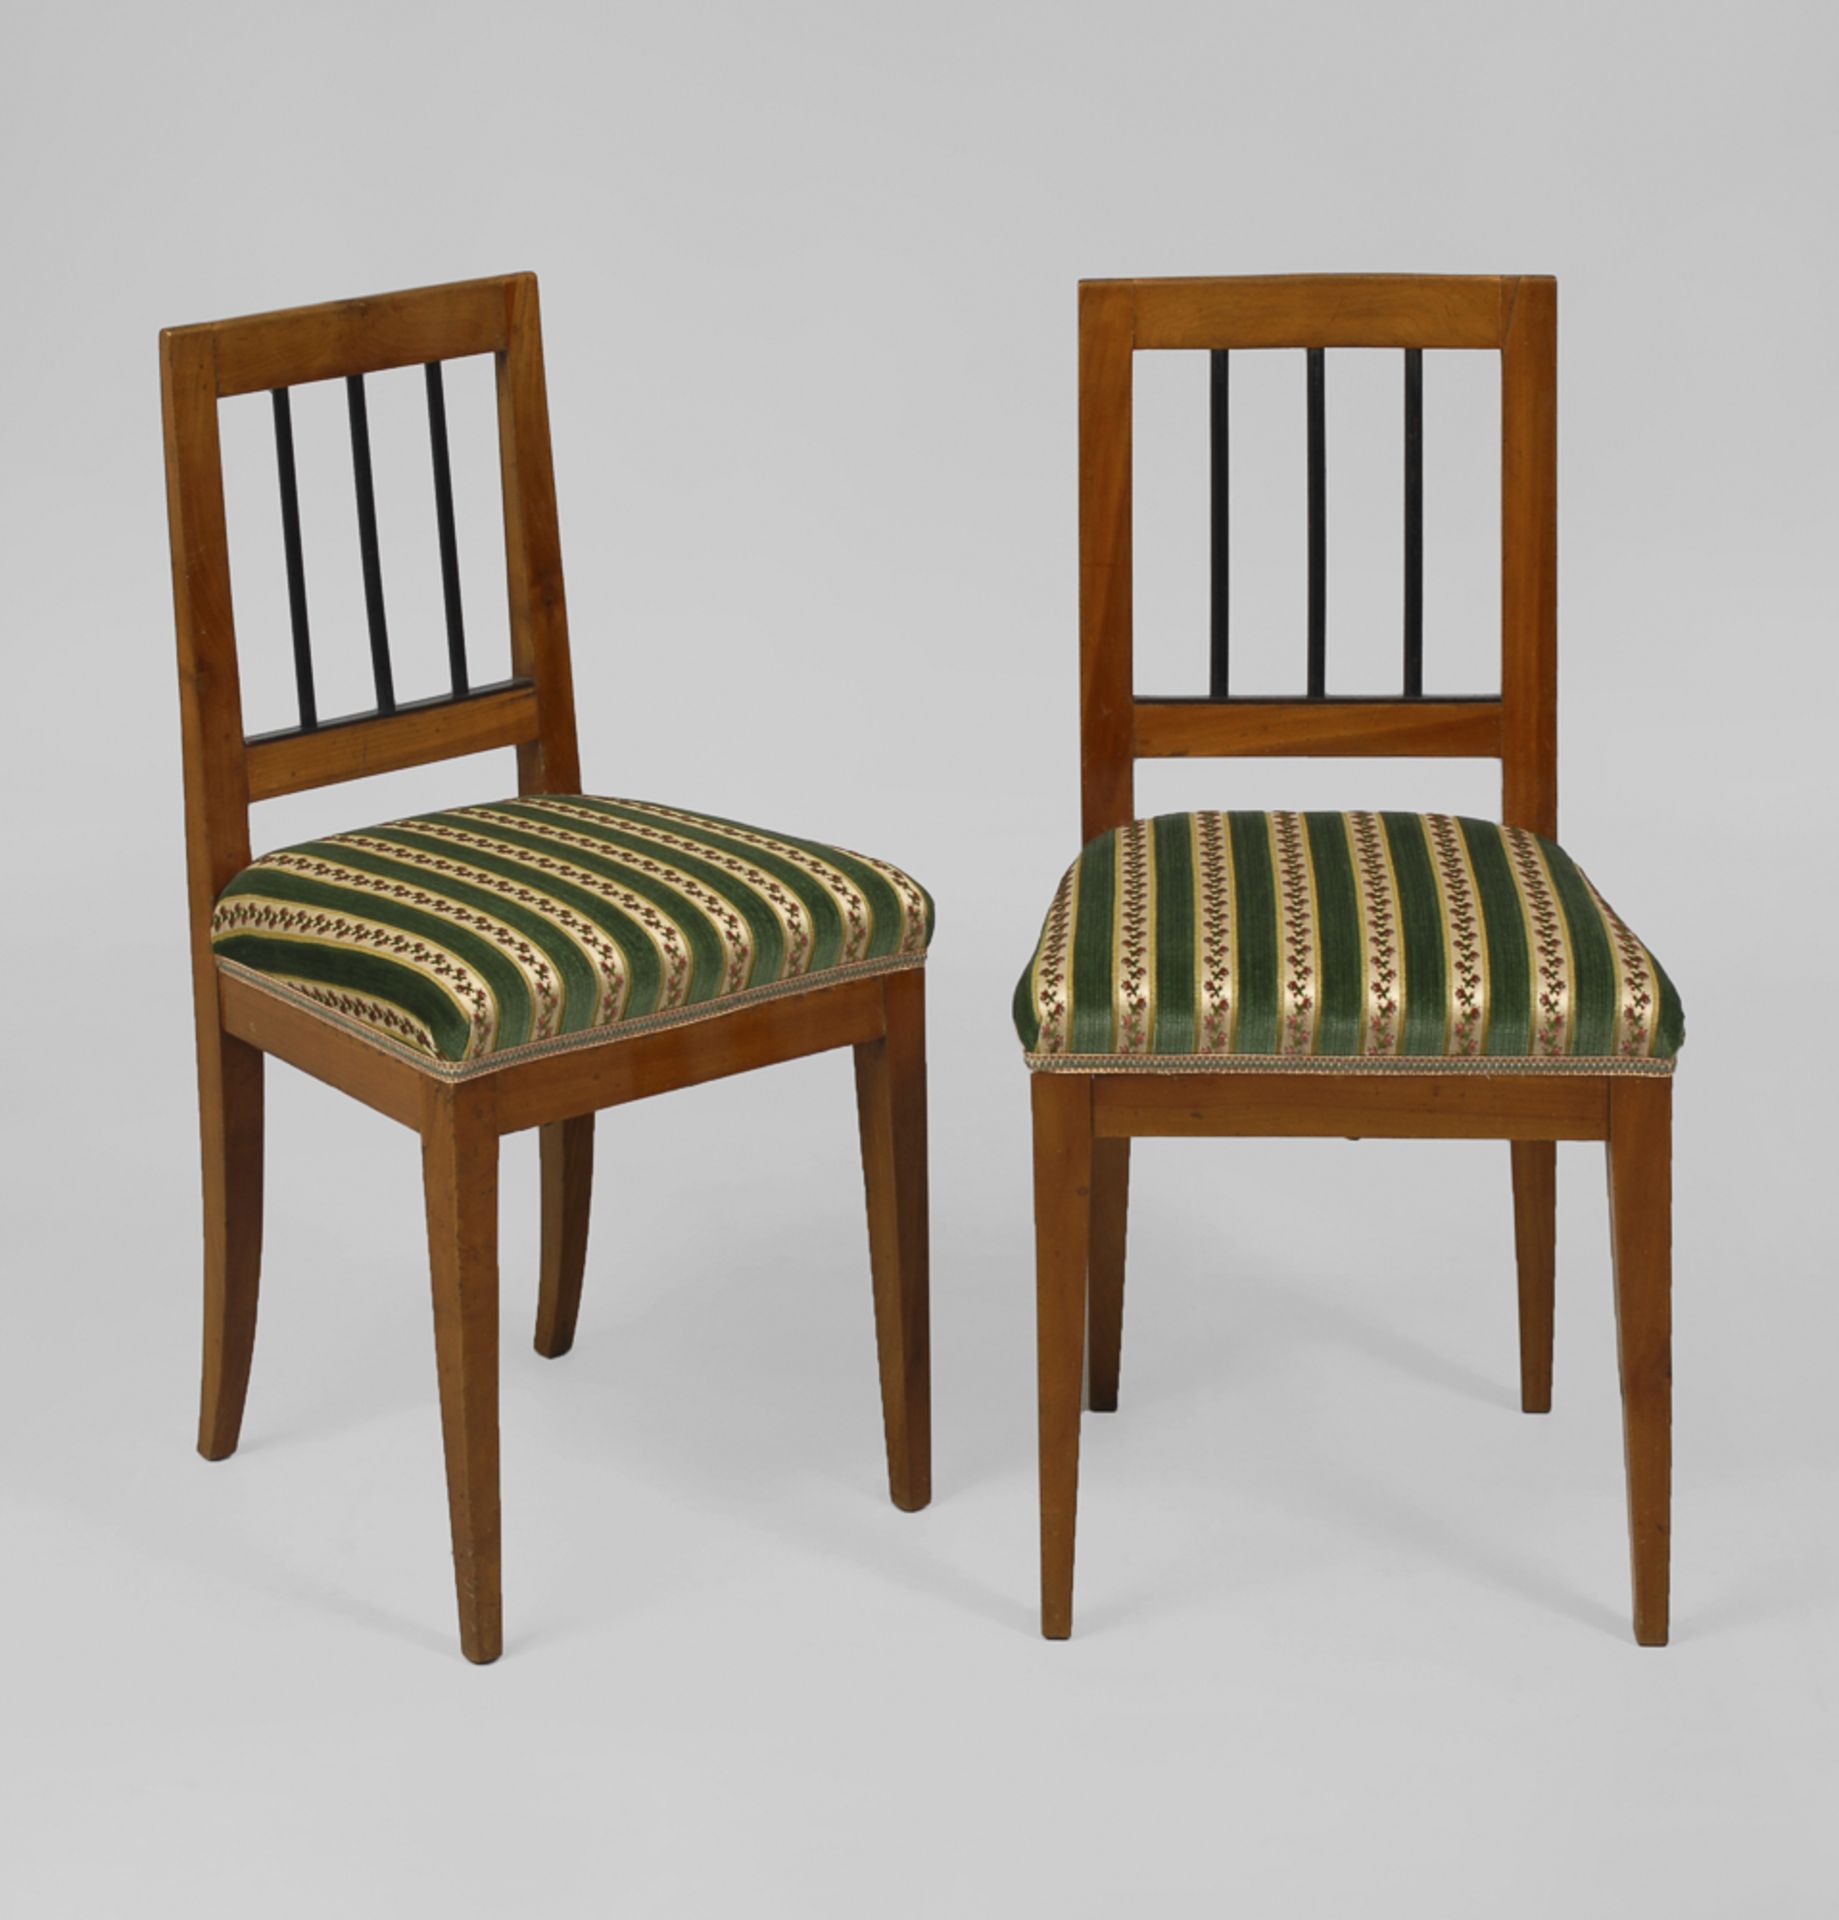 2 Biedermeier-Stühle.Um 1830. Kirschbaum furniert. H je 89 cm. 2 Polsterstühle mit 3-fach